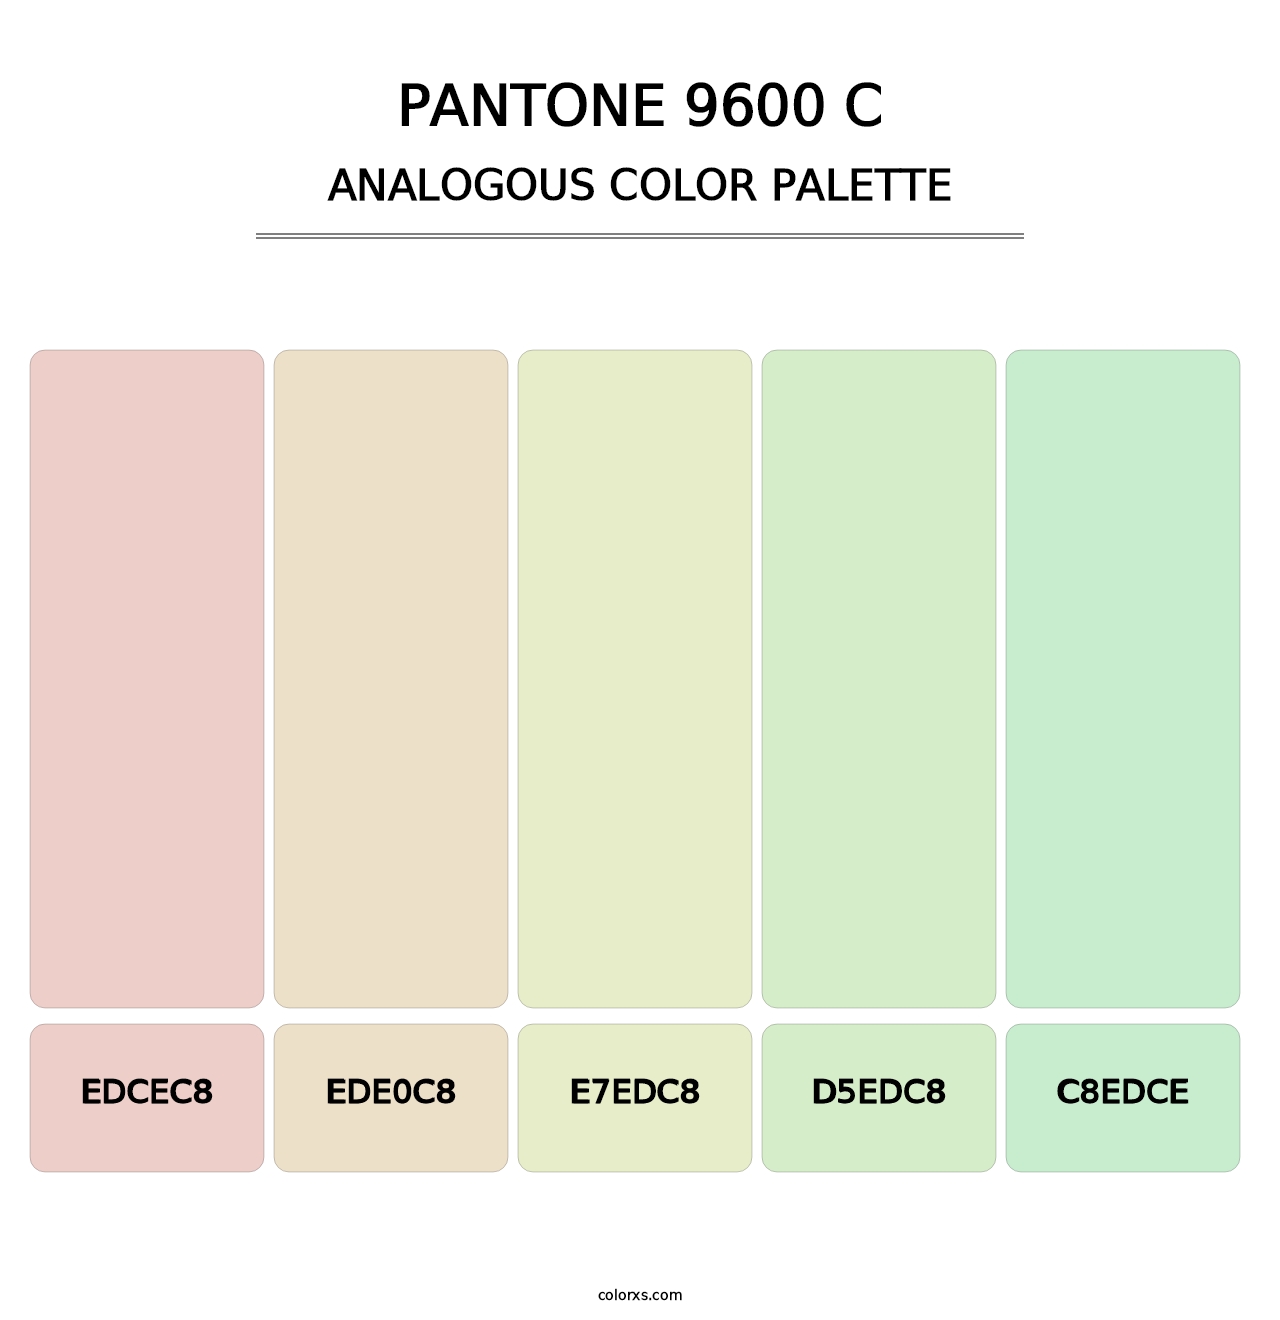 PANTONE 9600 C - Analogous Color Palette